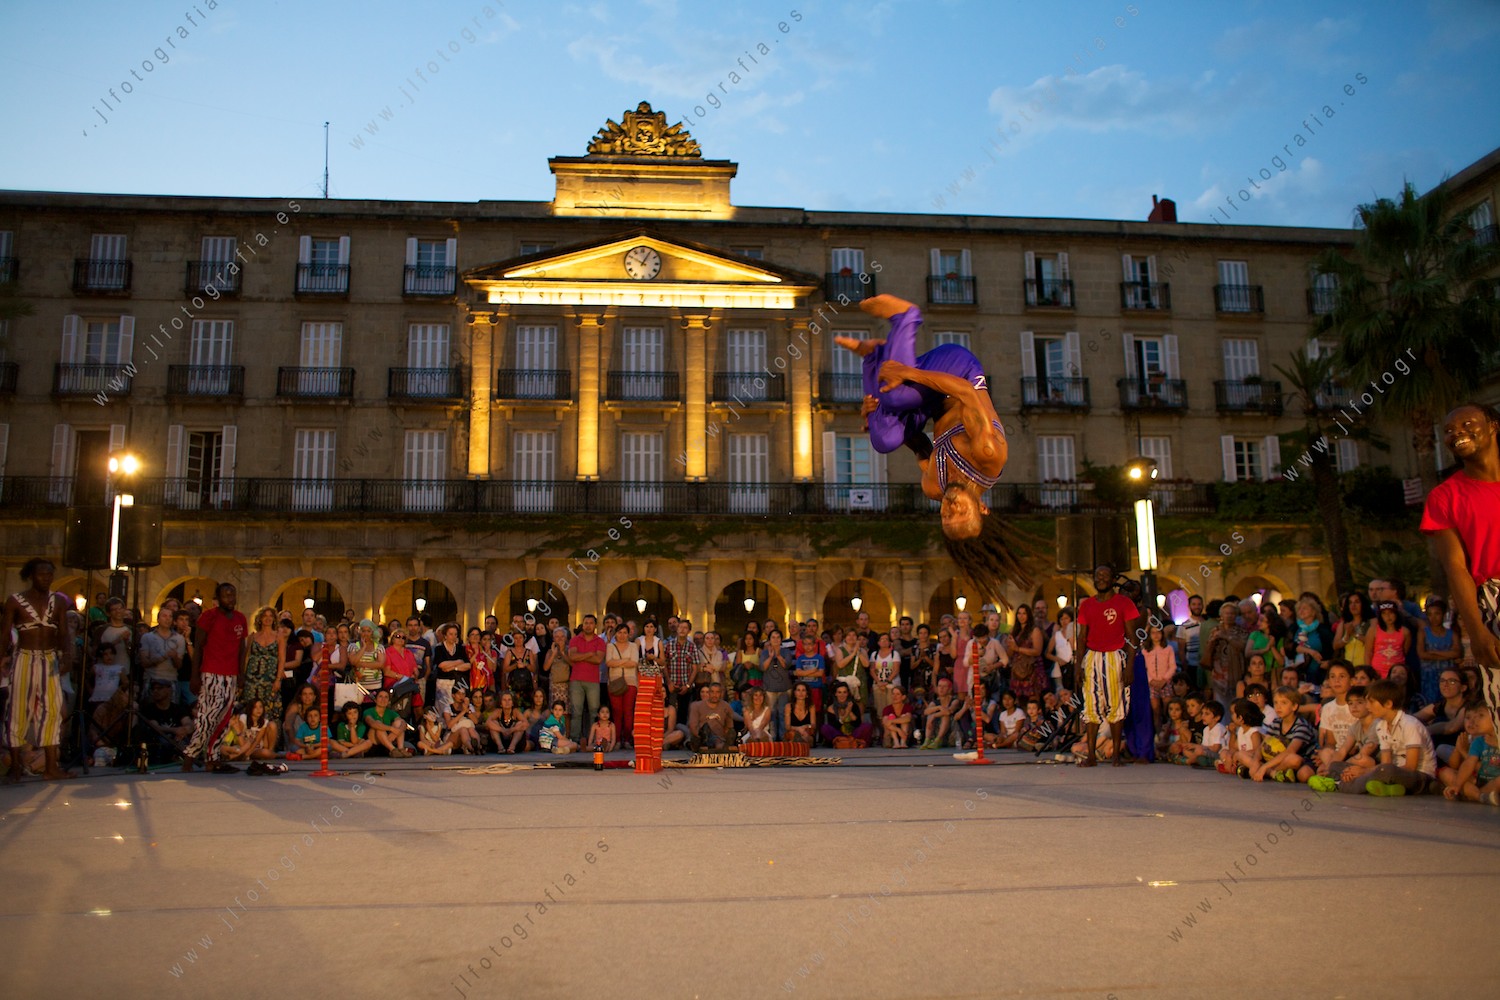 Salto acrobático en la Plaza Nueva de Bilbao